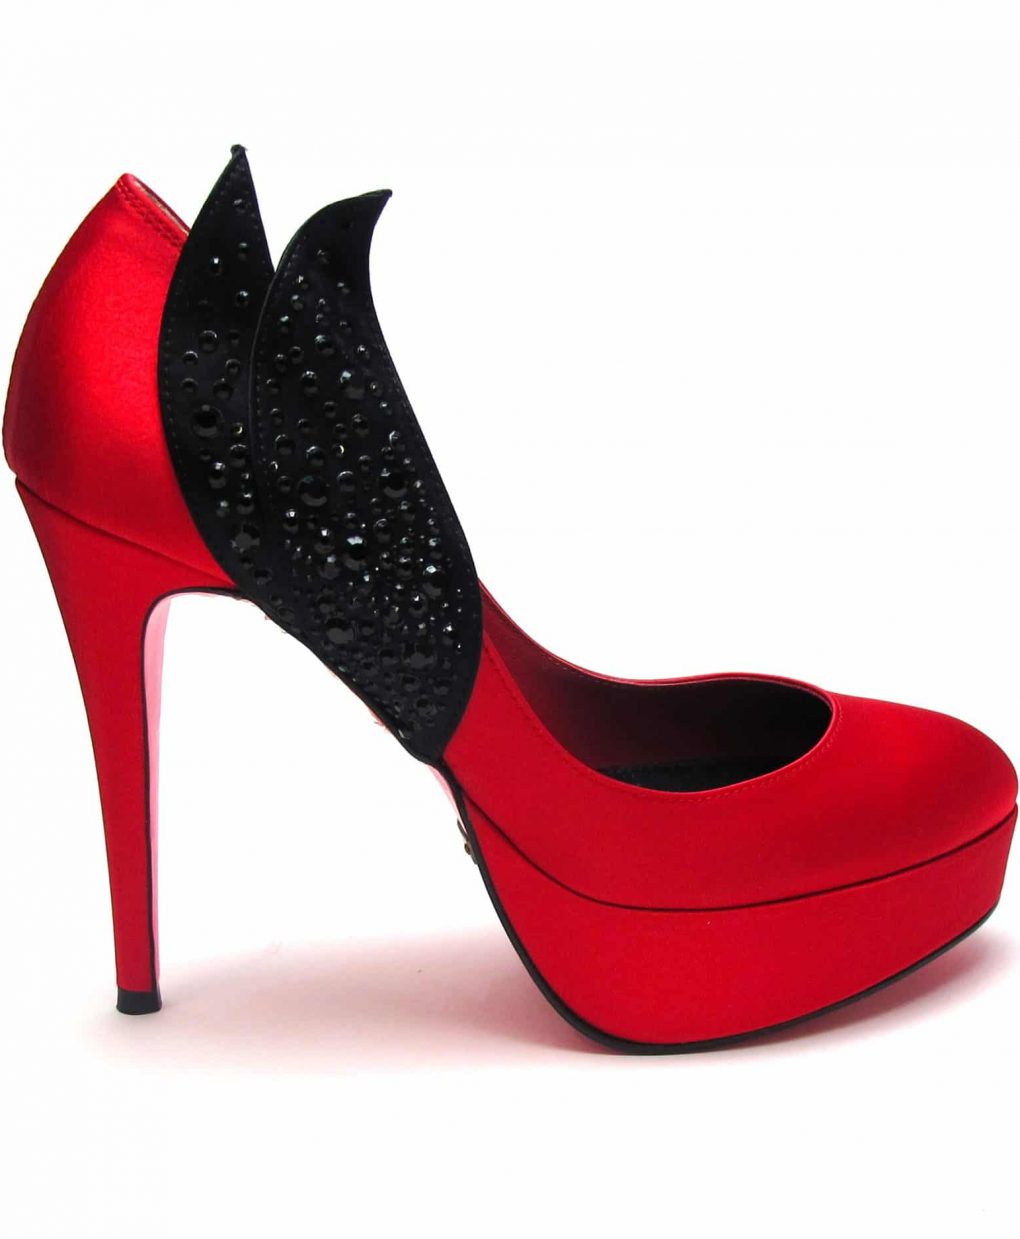 Alila Red & Black Leaf Crystal Heels by Suecomma Bonnie